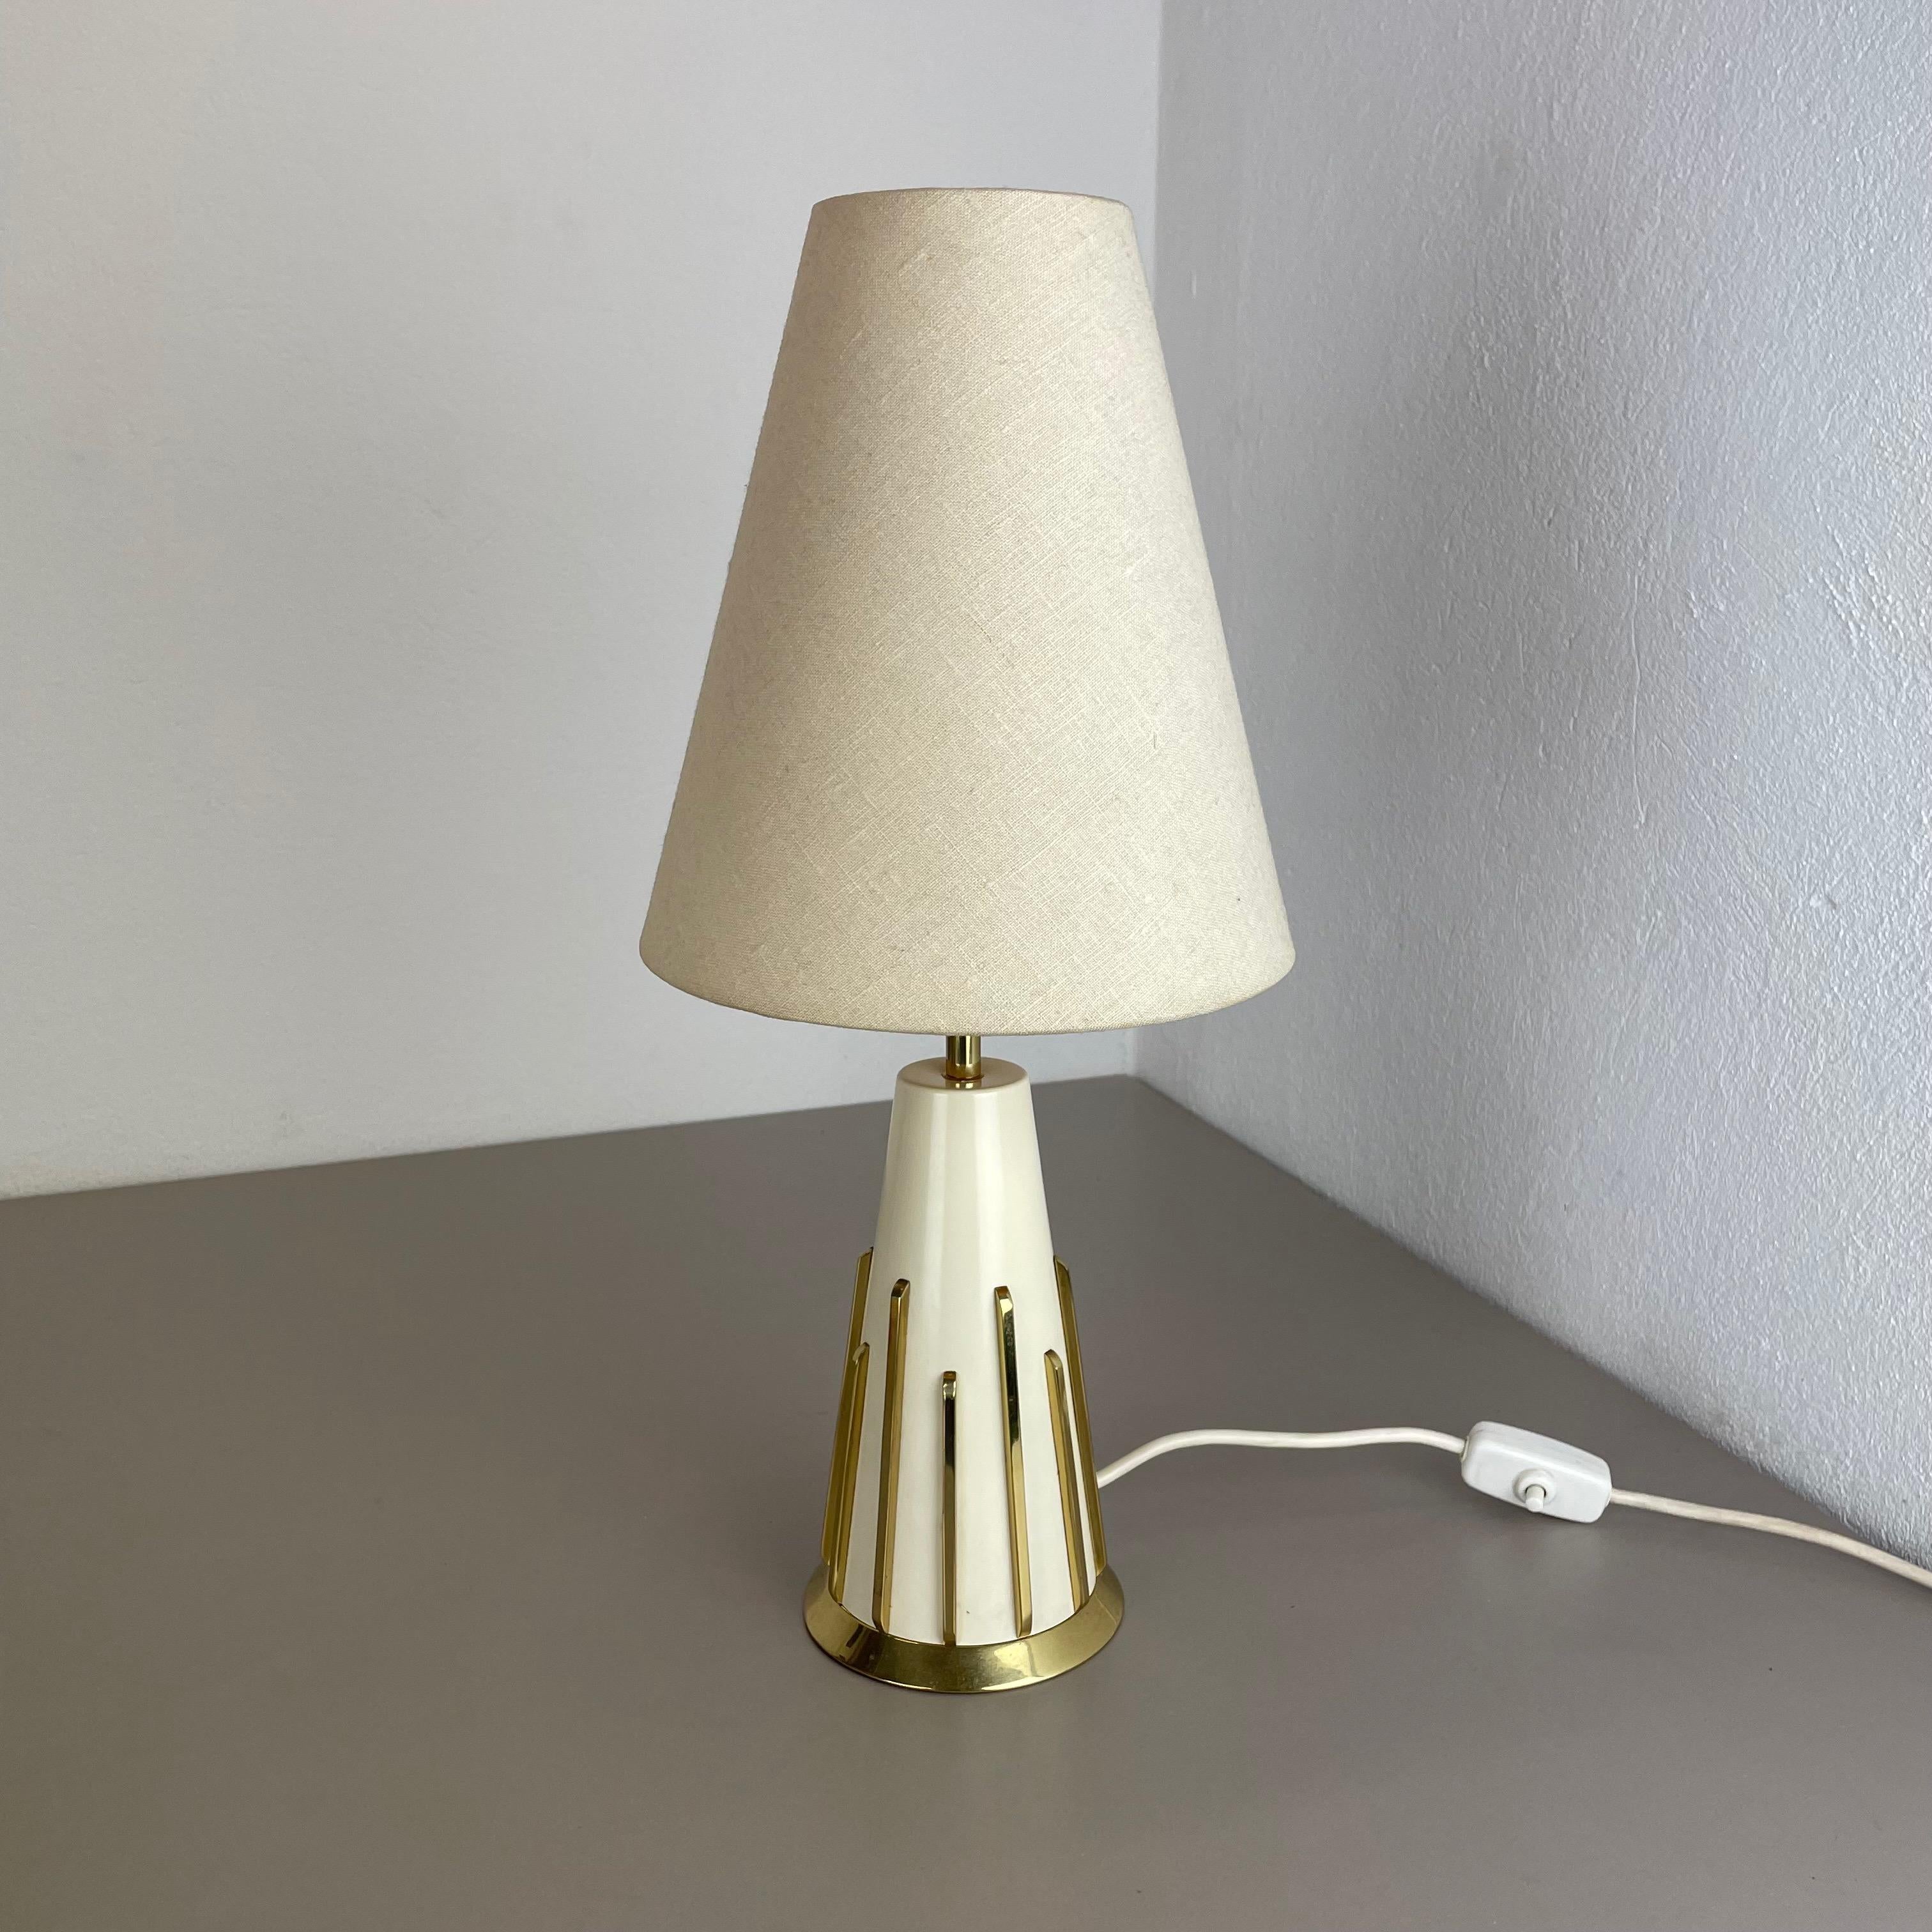 Article :

Lampe de table moderniste dans le style du Design/One


Origine :

Italie


Décennie :

1950s





Cette lampe vintage originale a été conçue et produite dans les années 1950 en Italie. La base de la lampe est en métal